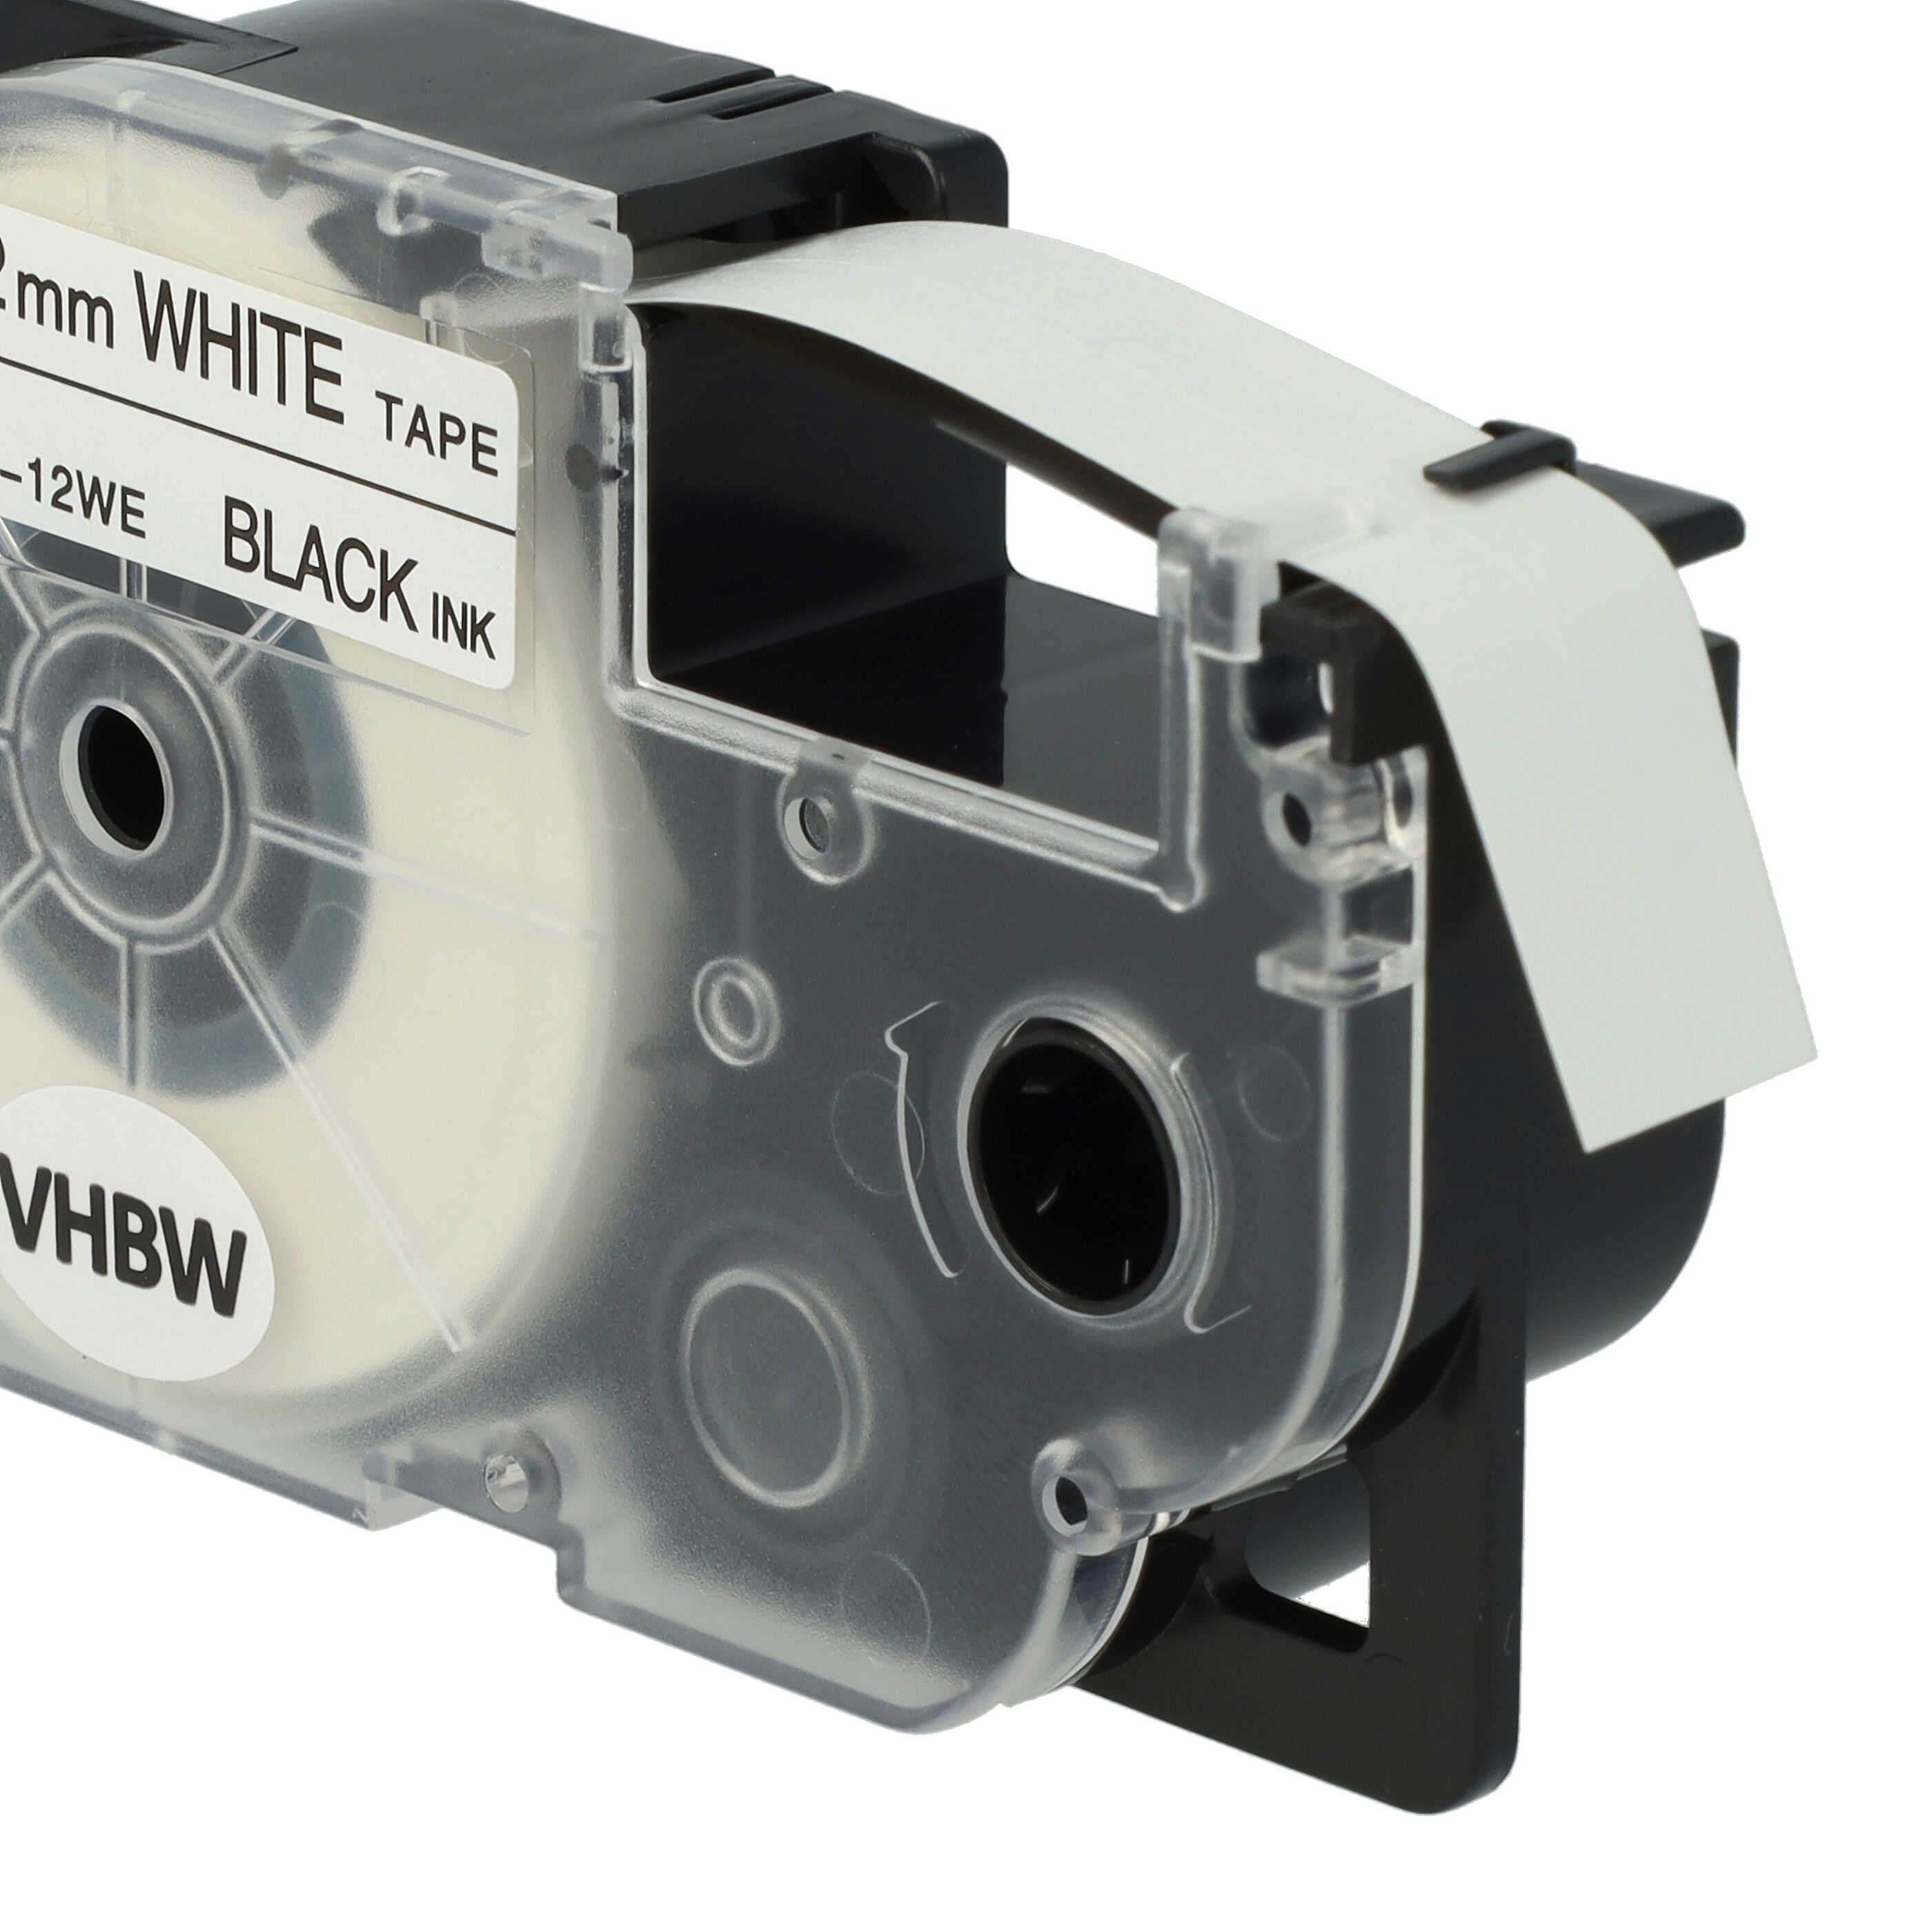 10x Cassettes à ruban remplacent Casio XR-12WE, XR-12WE1 - 12mm lettrage Noir ruban Blanc